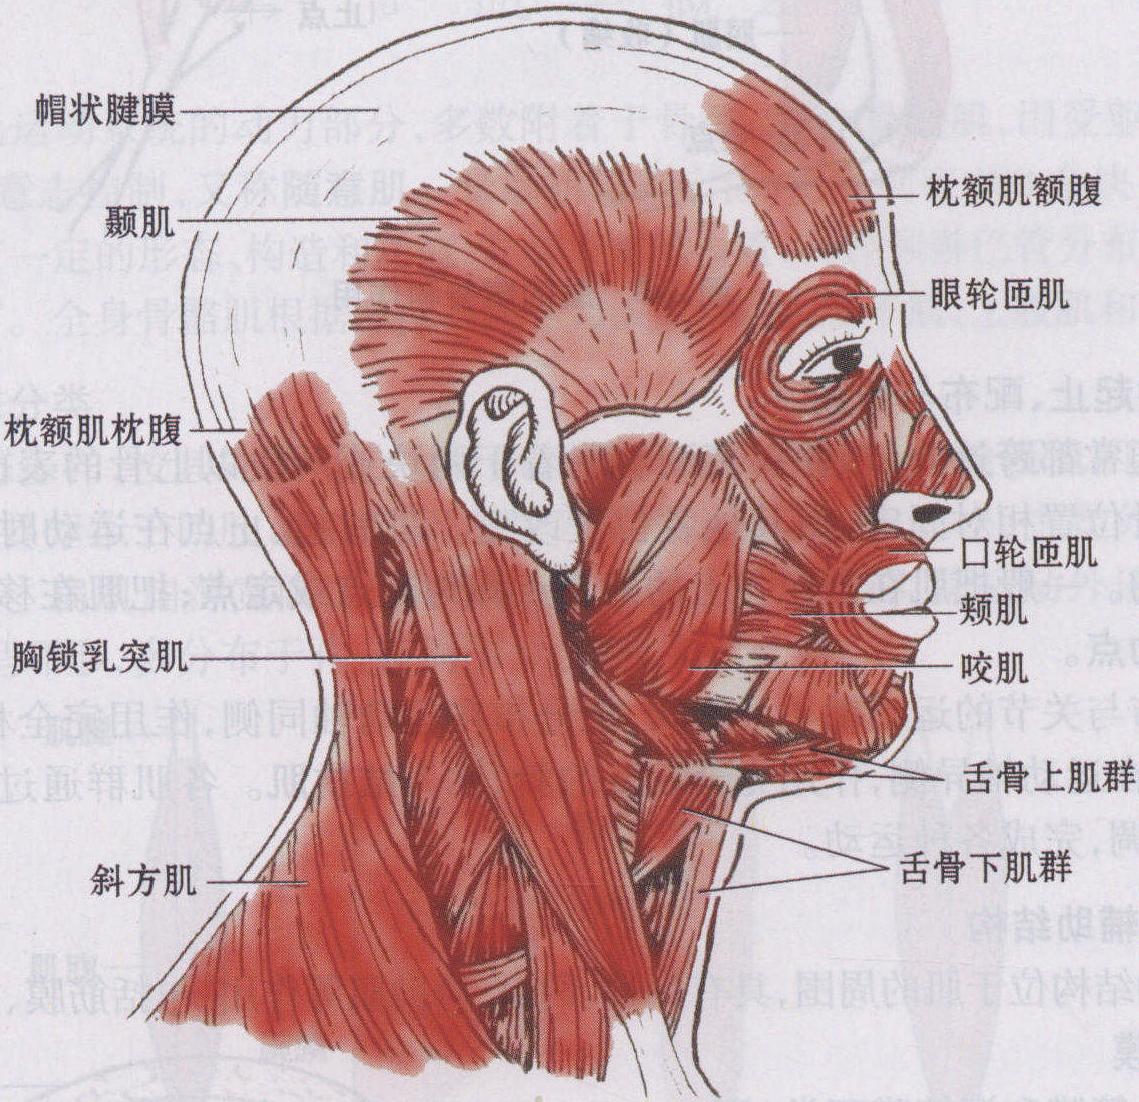 人的脸部肌肉解剖学 库存例证. 插画 包括有 设计, 表面, 鼻子, 人力, 皮肤, 健康, 头骨, 爱好健美者 - 137855885